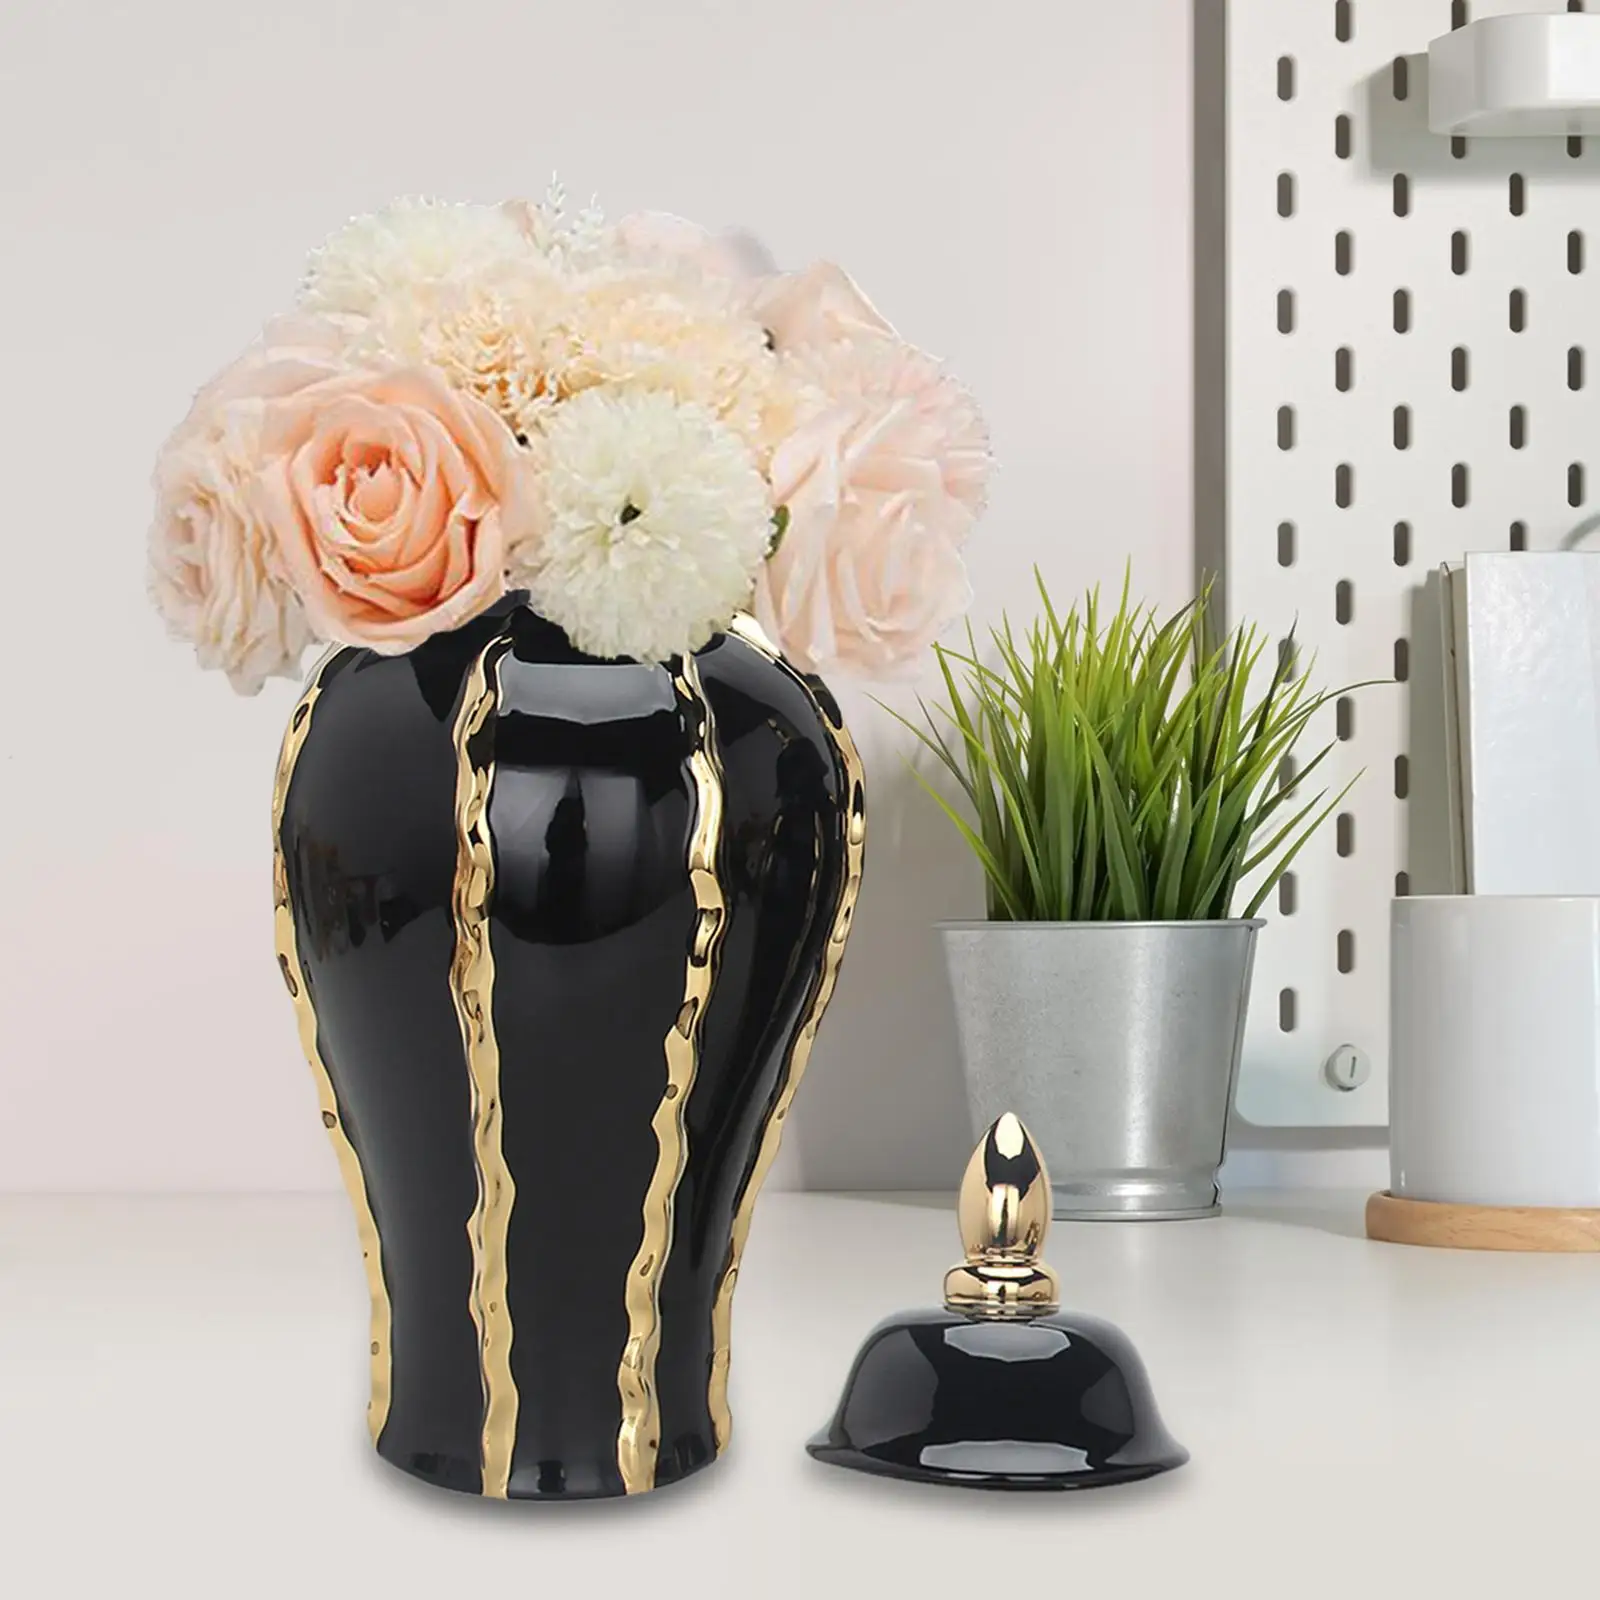 Porcelain Ginger Jar Floral Arrangement Pot Traditional Desktop Ceramic Vase